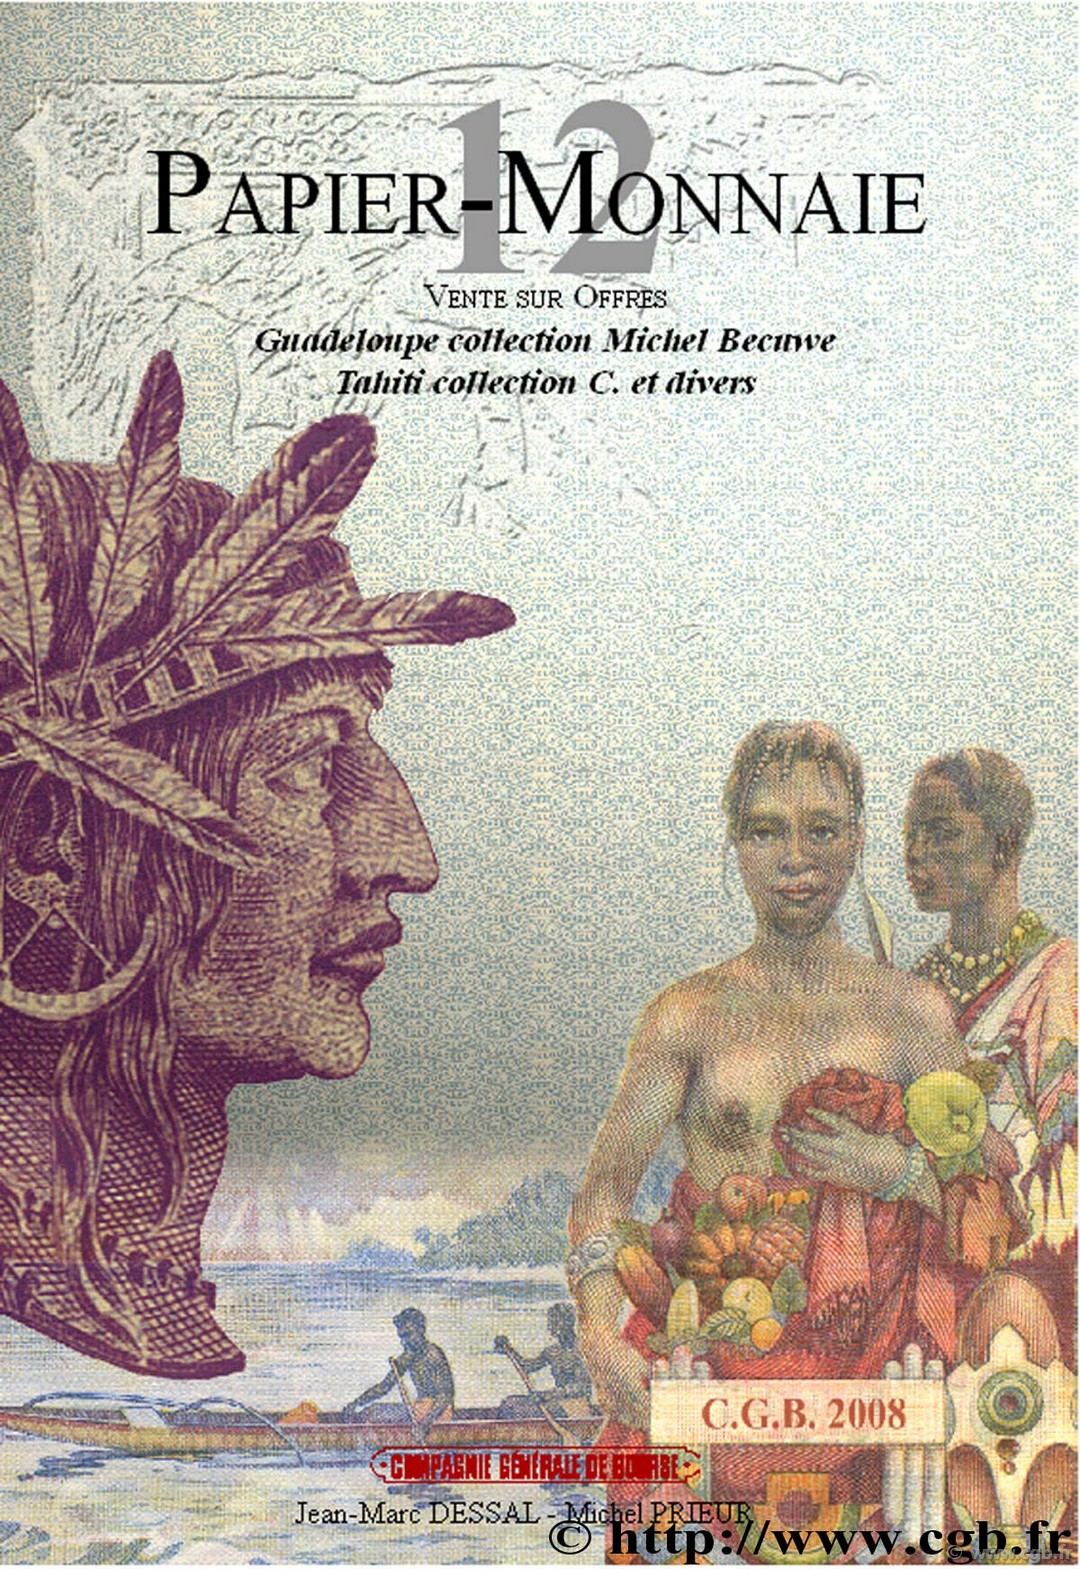 PAPIER-MONNAIE 12, Guadeloupe collection Michel Becuwe, Tahiti collection C. et divers DESSAL Jean-Marc, PRIEUR Michel